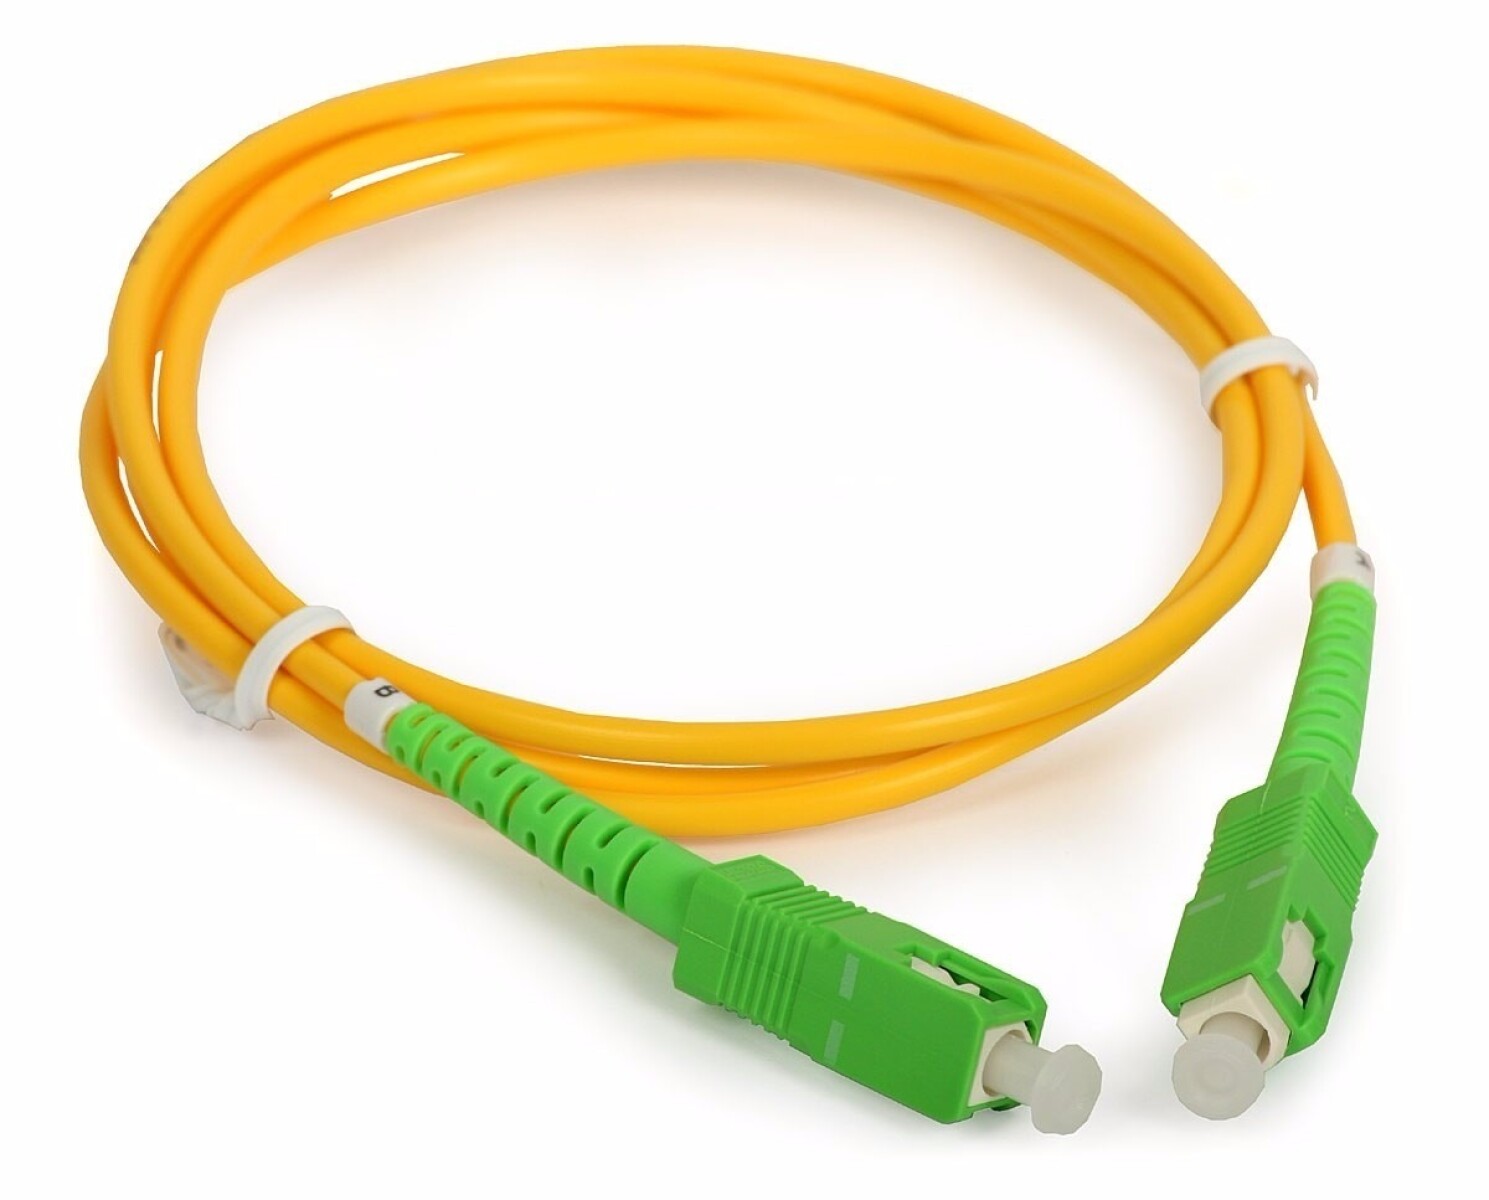 Cables De Red Ethernet Lan De 15 Metros Rj45 — MdeOfertas